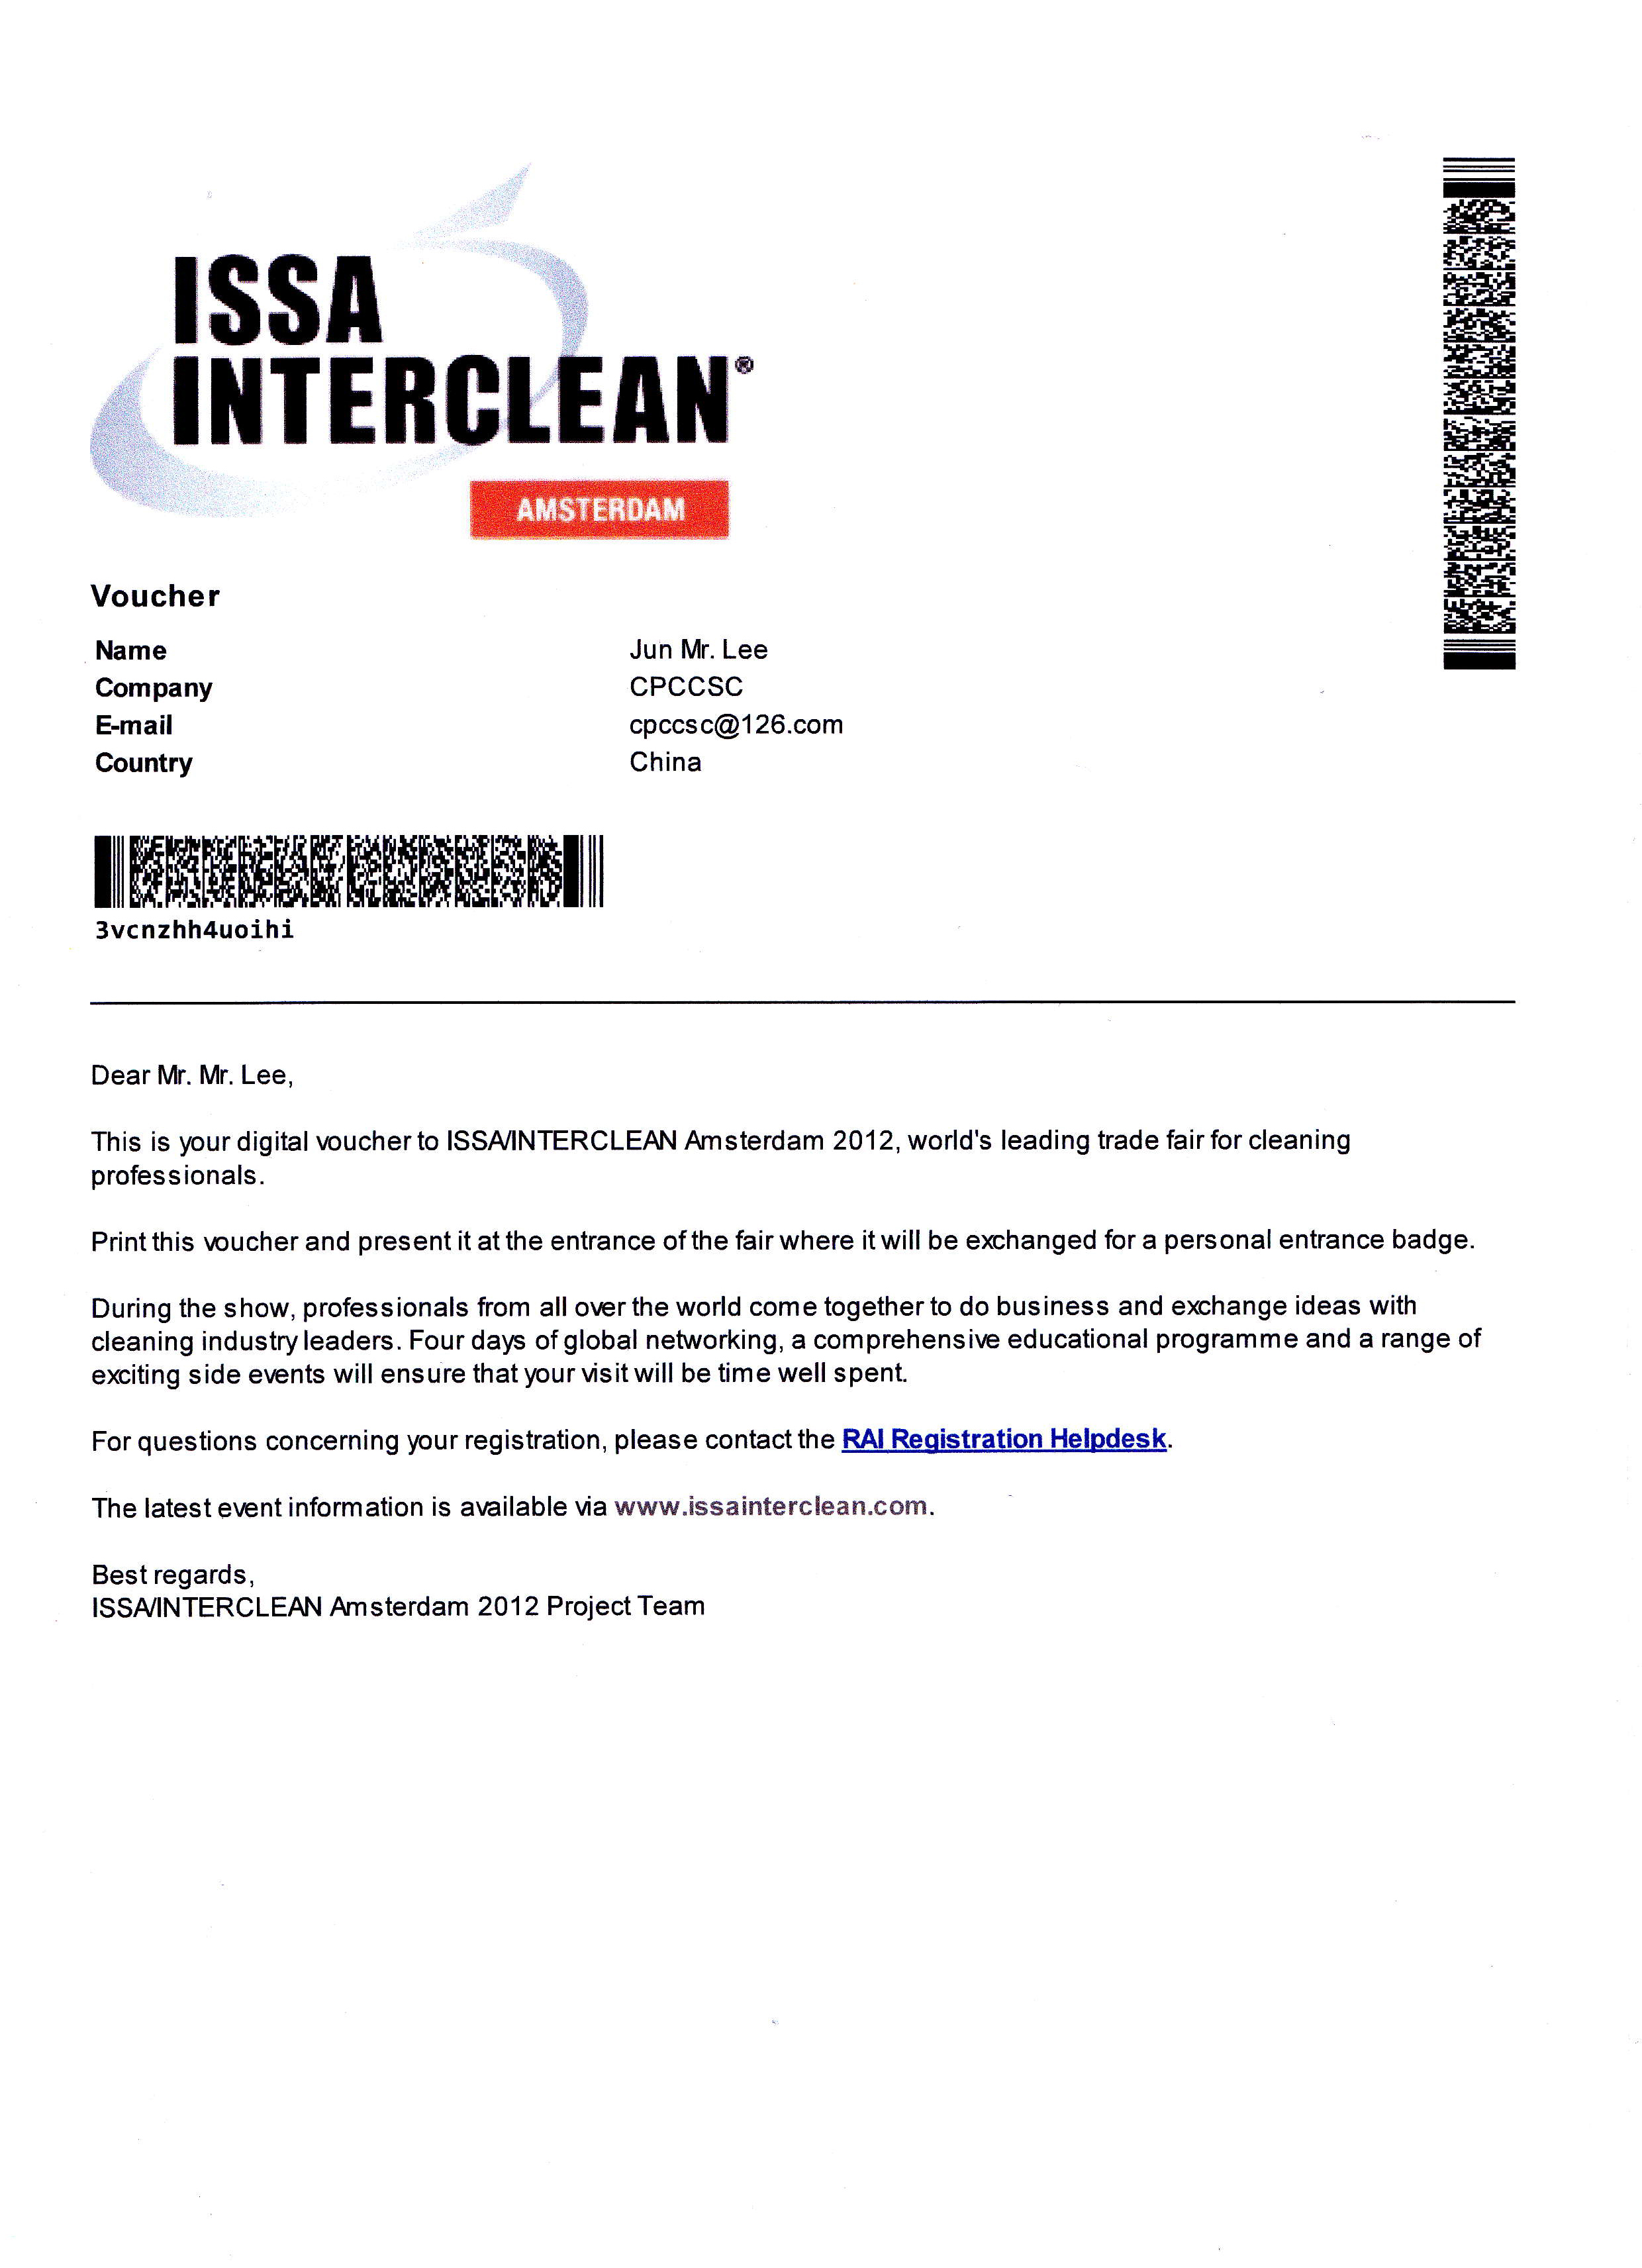 阿姆斯特丹国际清洁清洗展览会主办方向李军秘书长发出邀请函